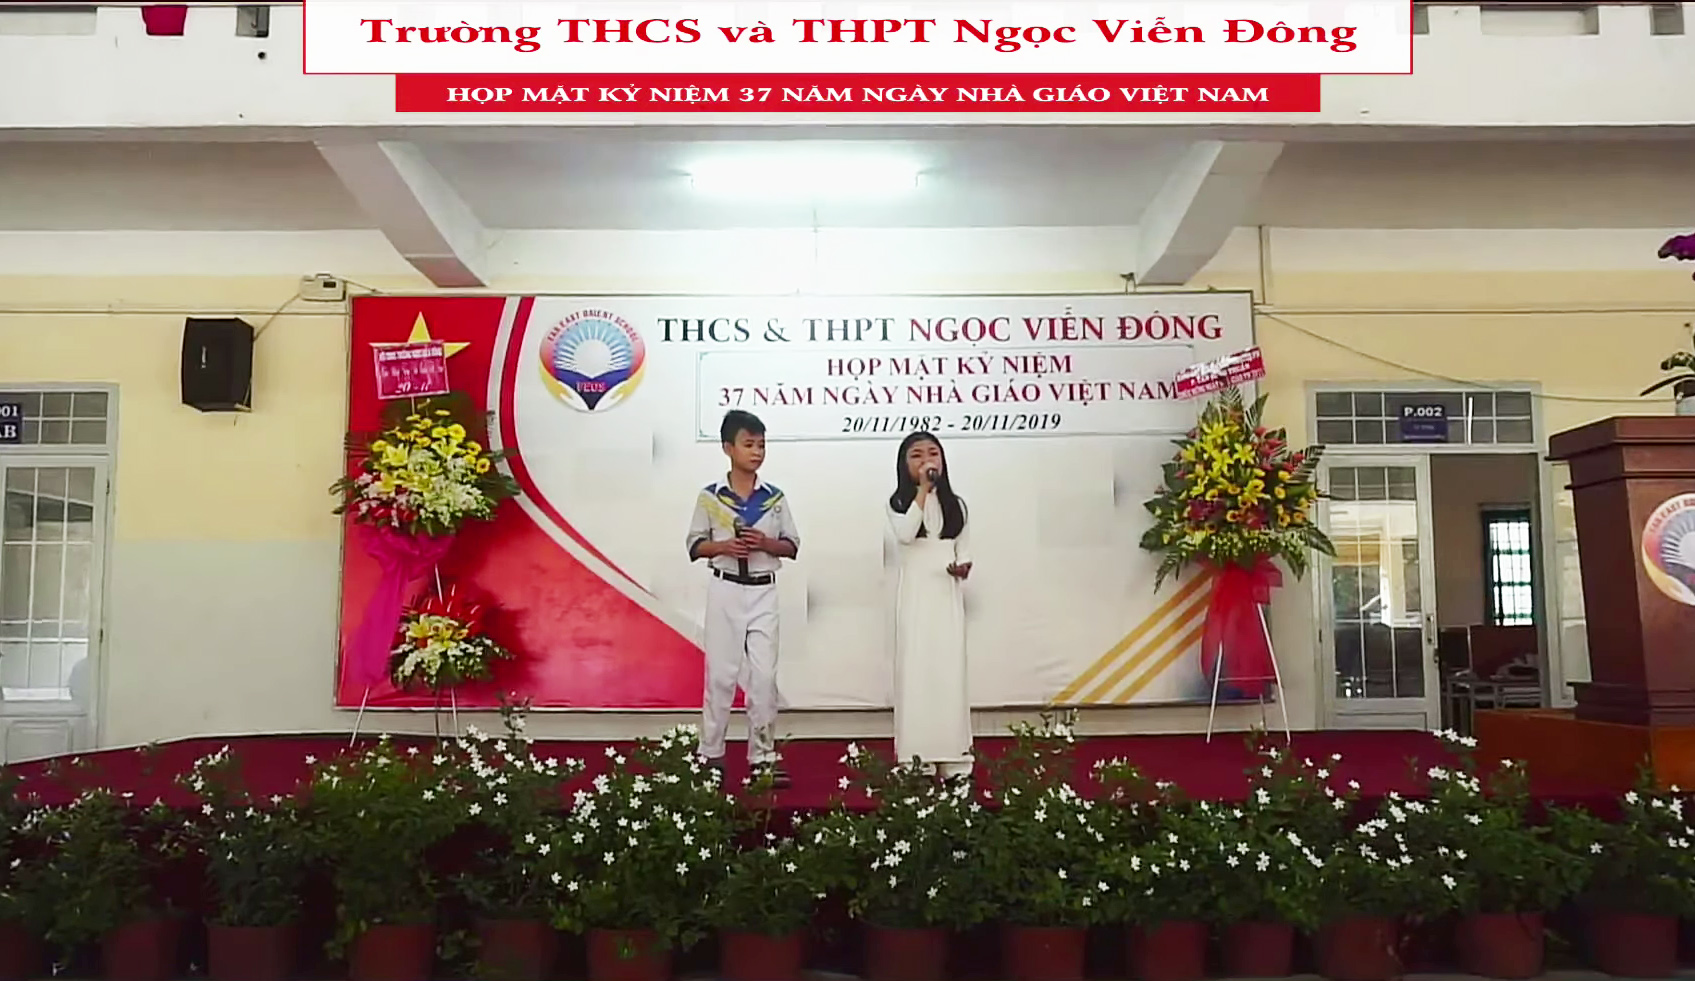 Meeting kỷ niệm 37 năm ngày Nhà giáo Việt Nam 20/11/2019 trường THCS và THPT Ngọc Viễn Đông